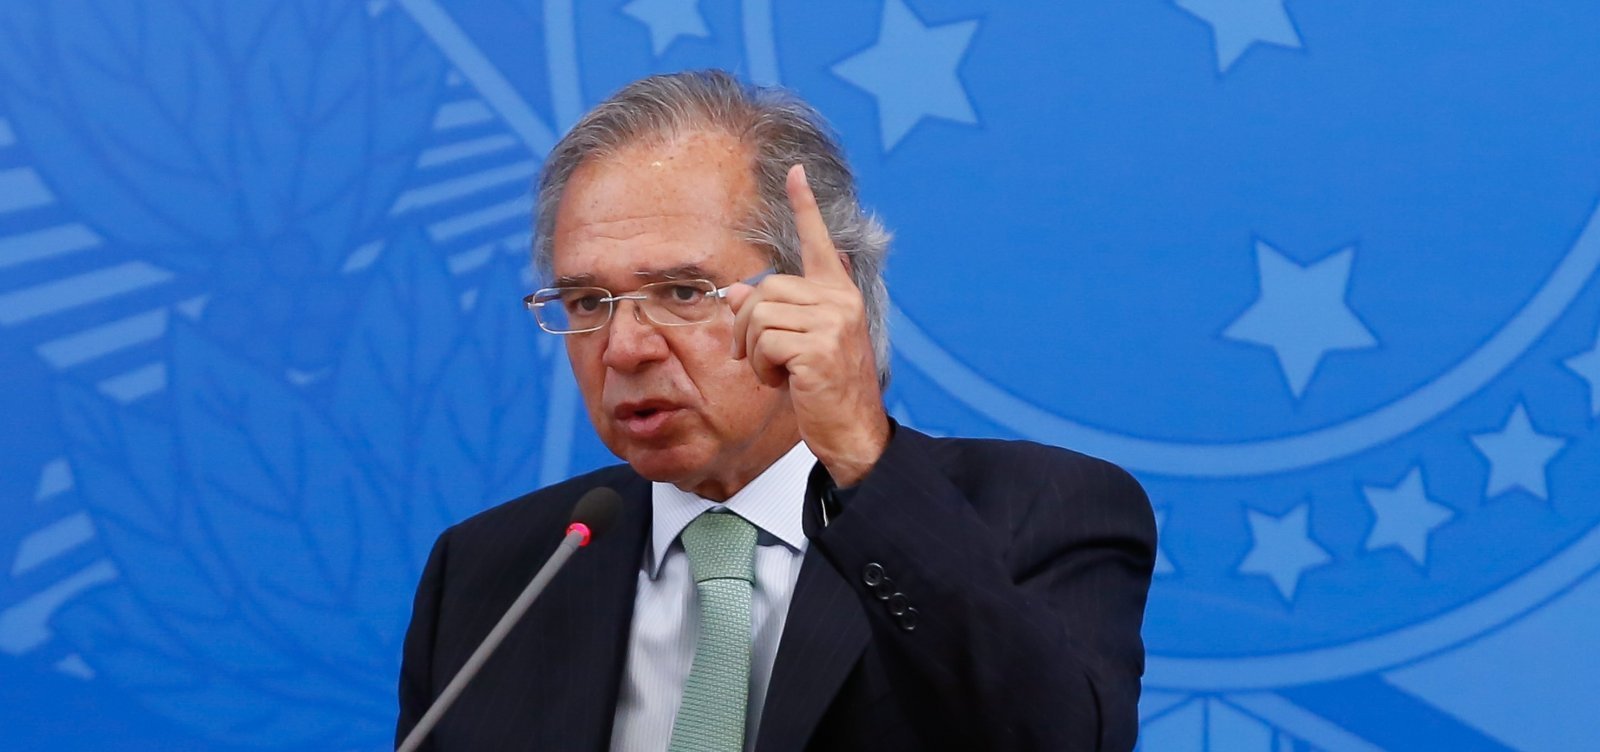 'Será um grande erro não investir no Brasil', diz Paulo Guedes